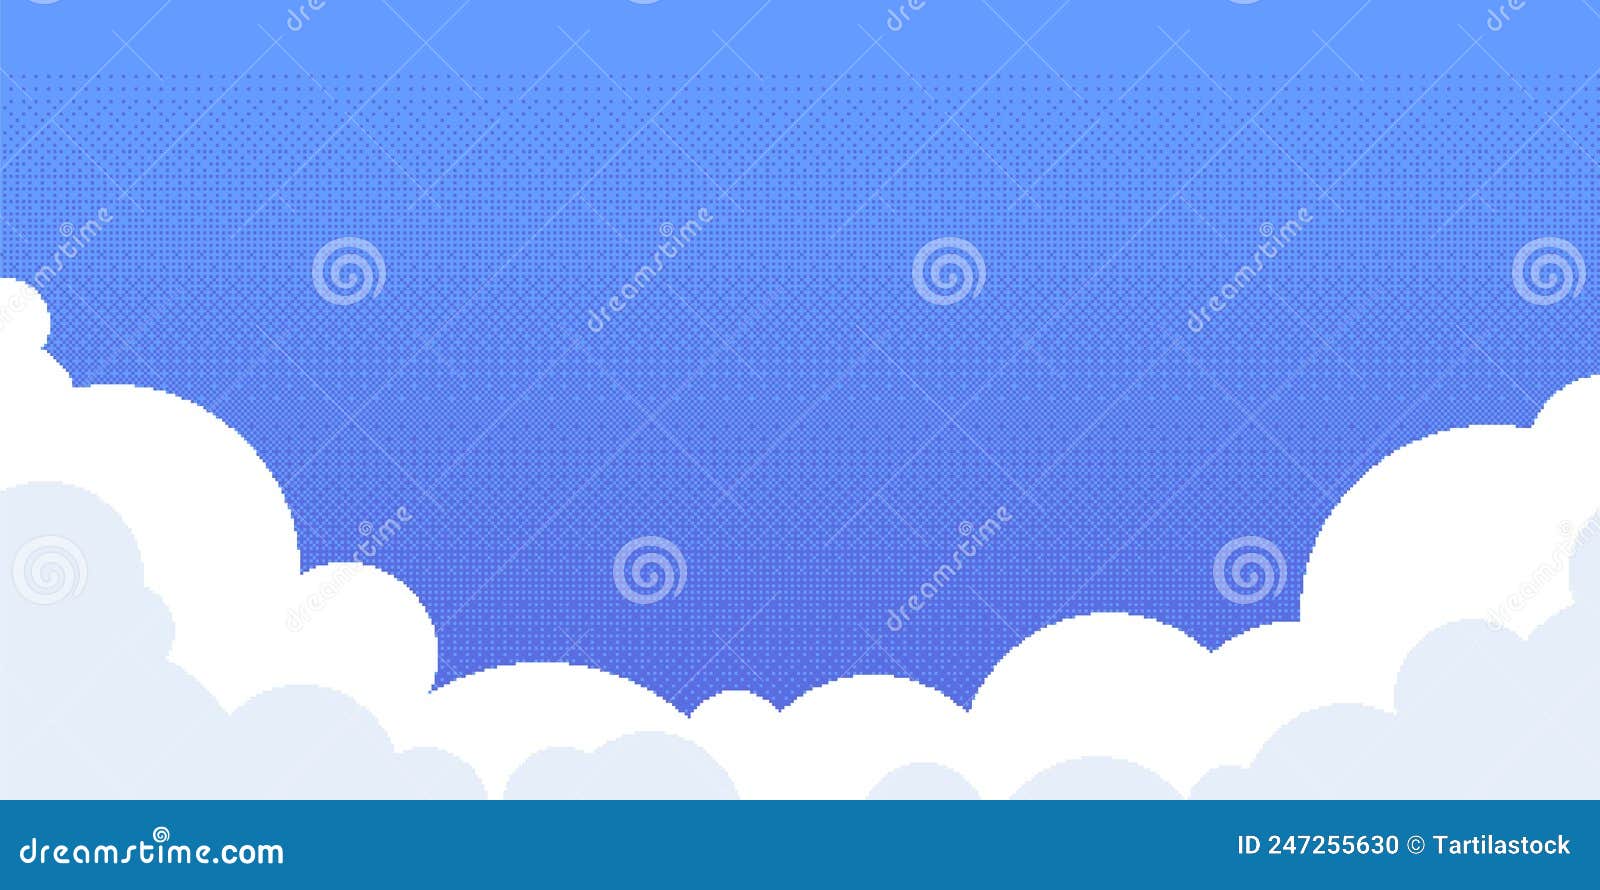 Jogo nuvem ativo. Retro 8 bit vídeo game fundo com nuvens de desenhos  animados, céu azul céu jogo arte. Coleção de elementos da IU vetorial  imagem vetorial de tartila.stock.gmail.com© 567840766